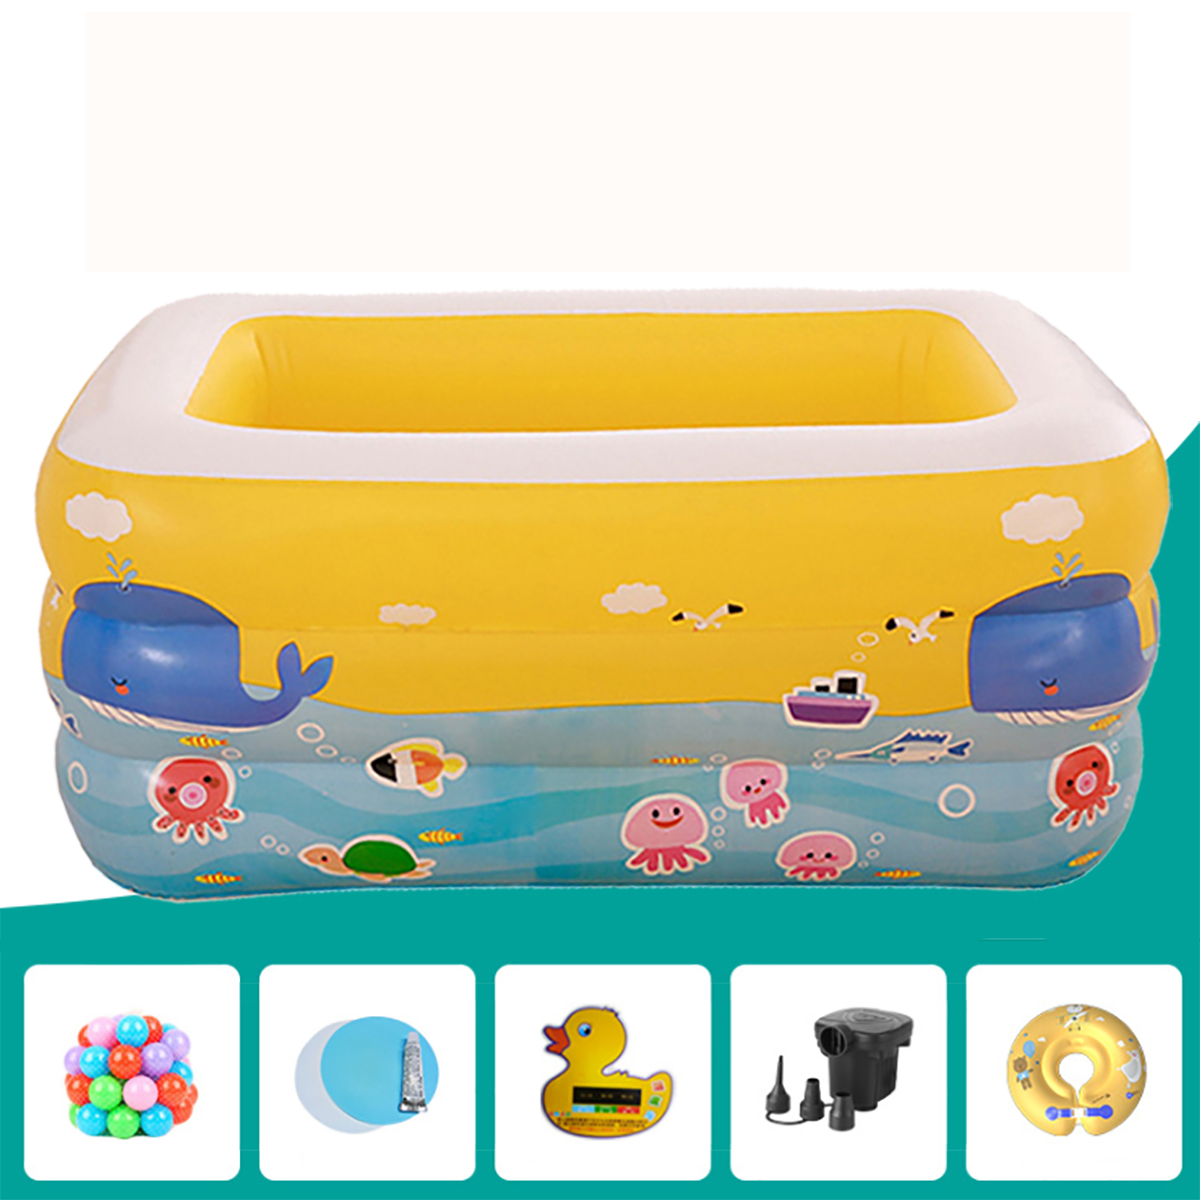 

Детские Детские Надувные Плавательные Бассейн Газированная Площадь Новорожденных Воды Купания Play Toy